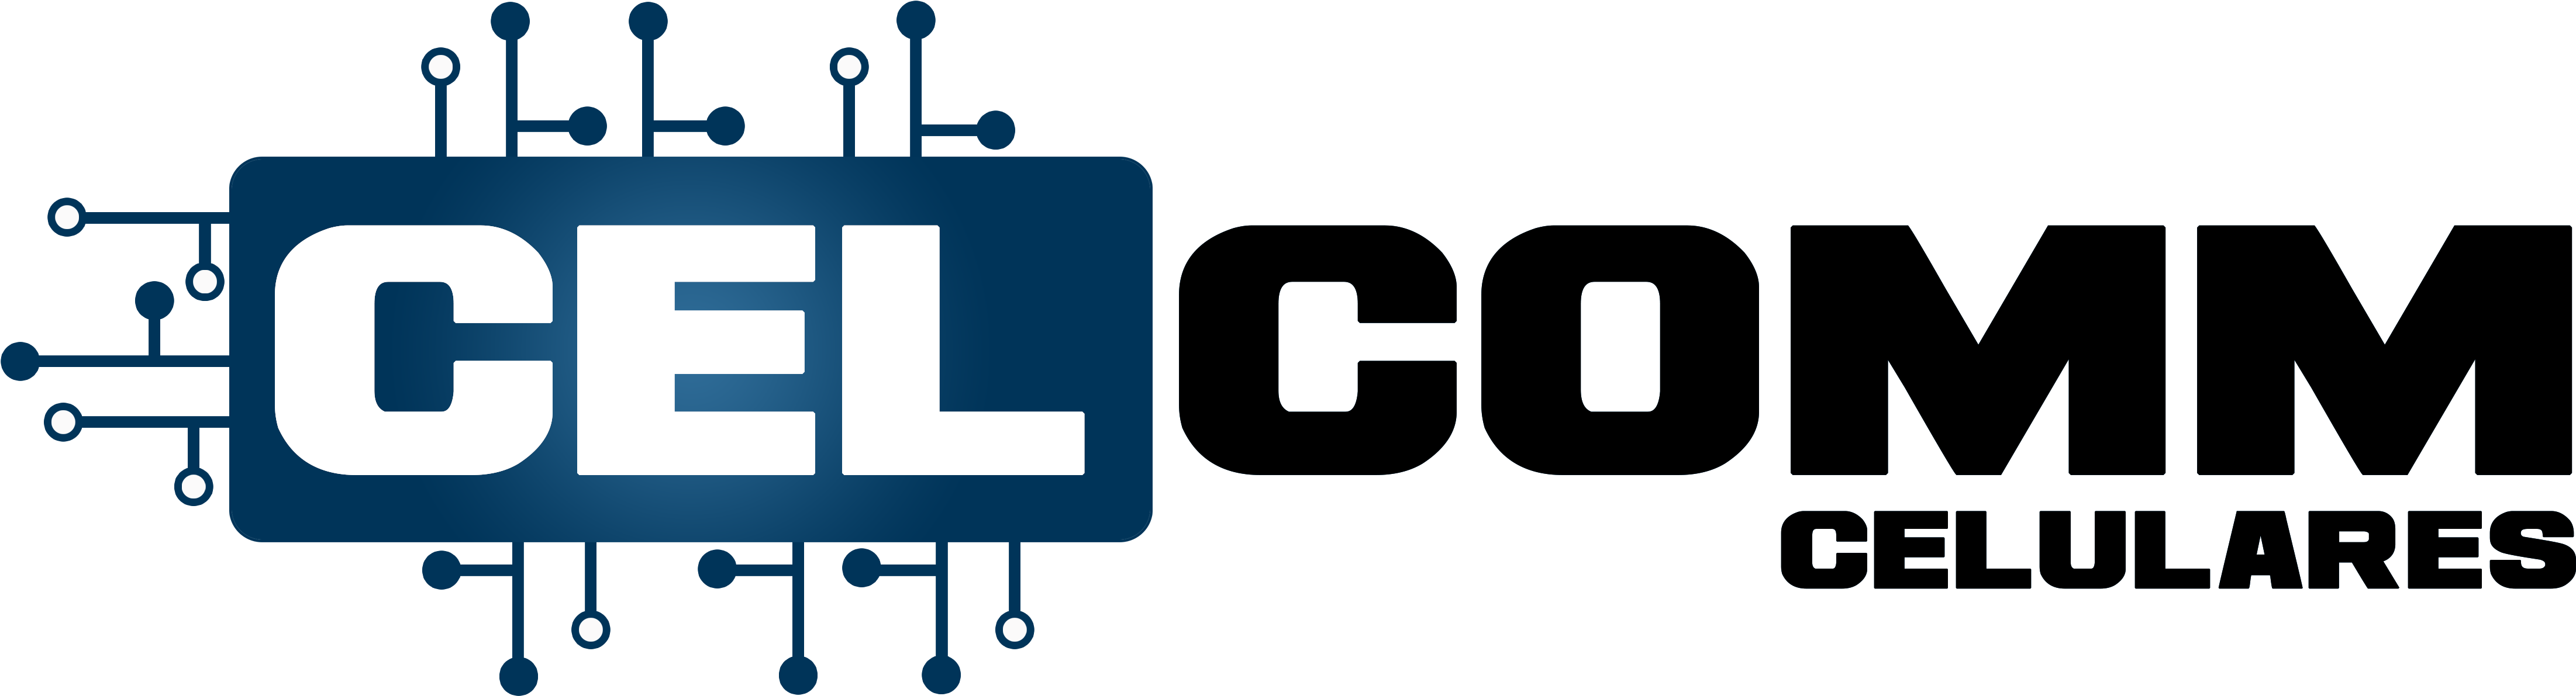 Logo Para Loja De Celular Clipart (4658x1356), Png Download